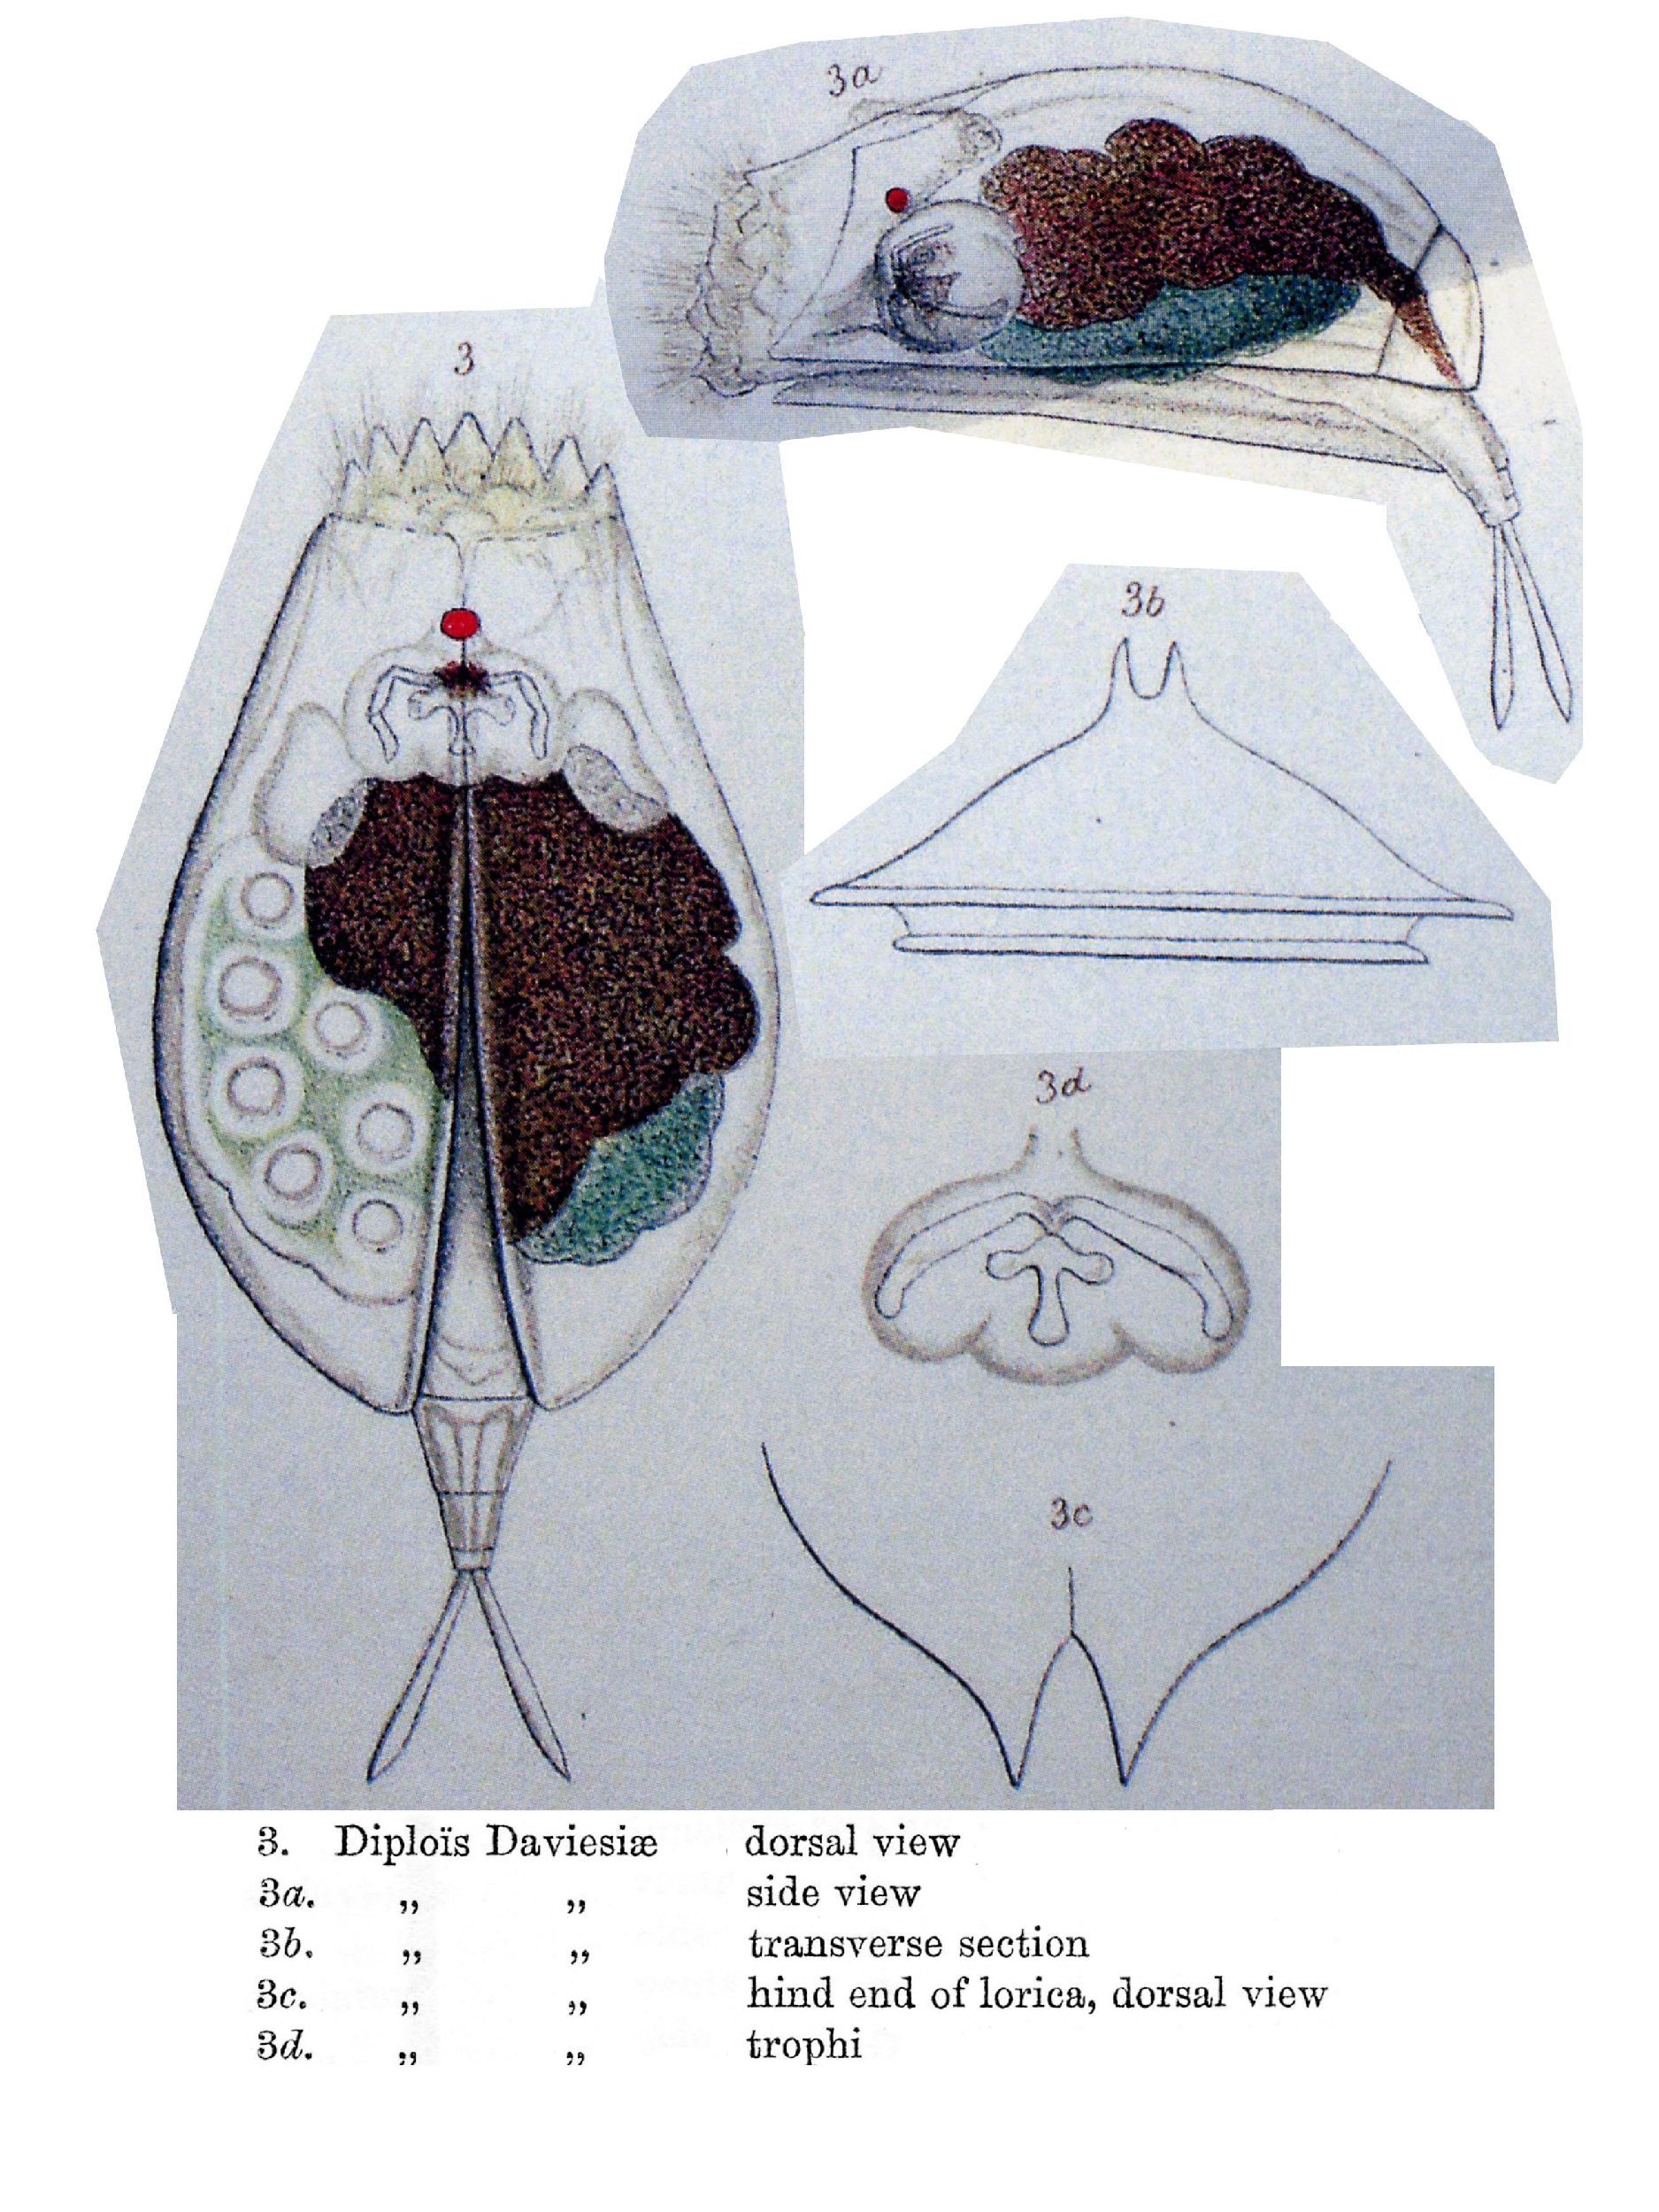 Image of Diplois daviesiae Gosse 1886